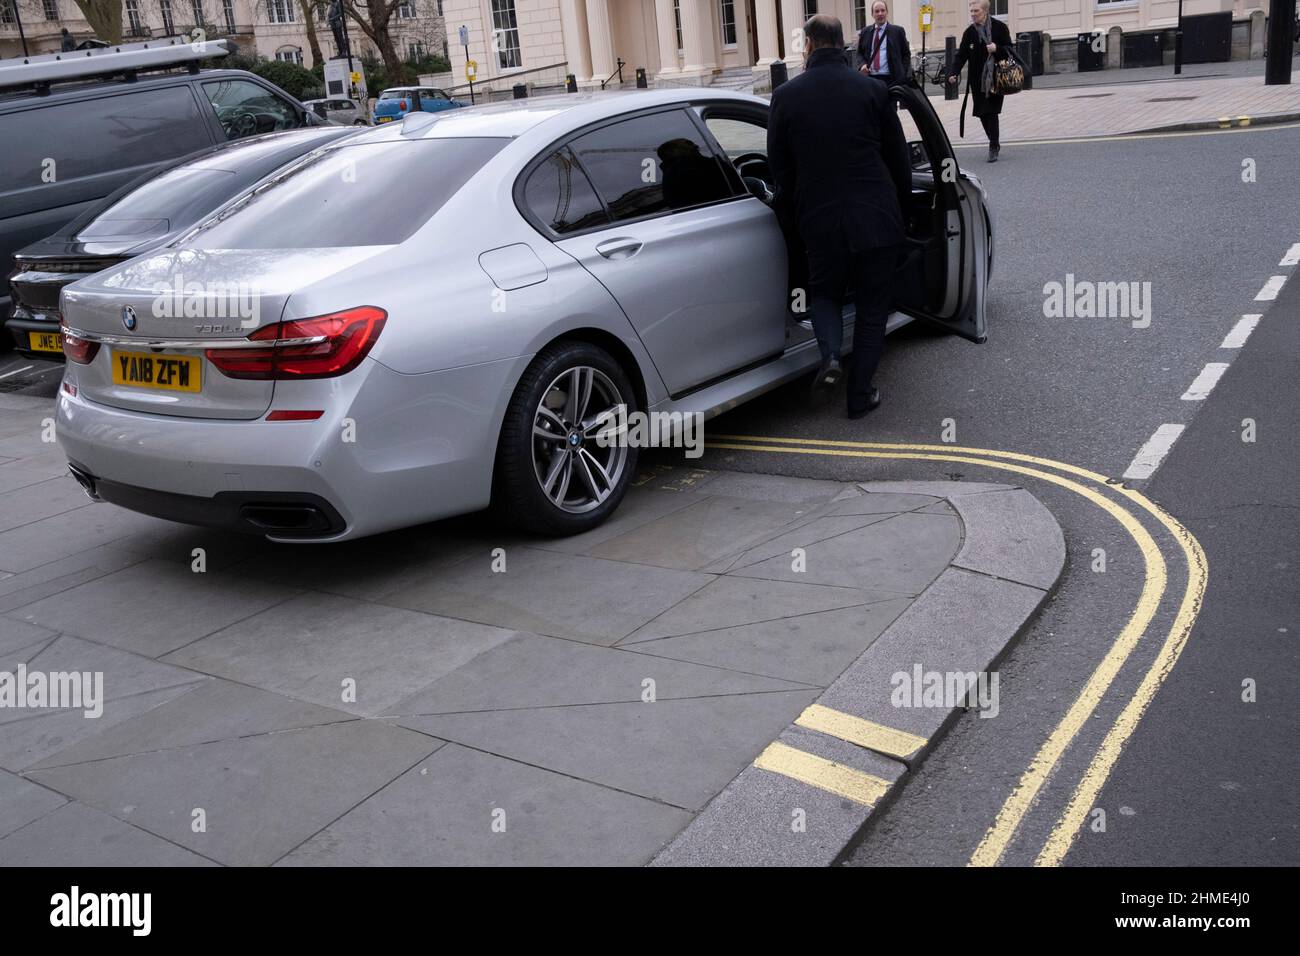 Am 9th. Februar 2022, in London, England, wird ein Autofahrer mit einem schlecht geparkten BMW-Auto gesehen, der sich über eine zweifach gelbe Linie und die Bordsteinkante umgedreht und auf den Bürgersteig an der Ecke der Pall Mall im Zentrum Londons führt. Stockfoto